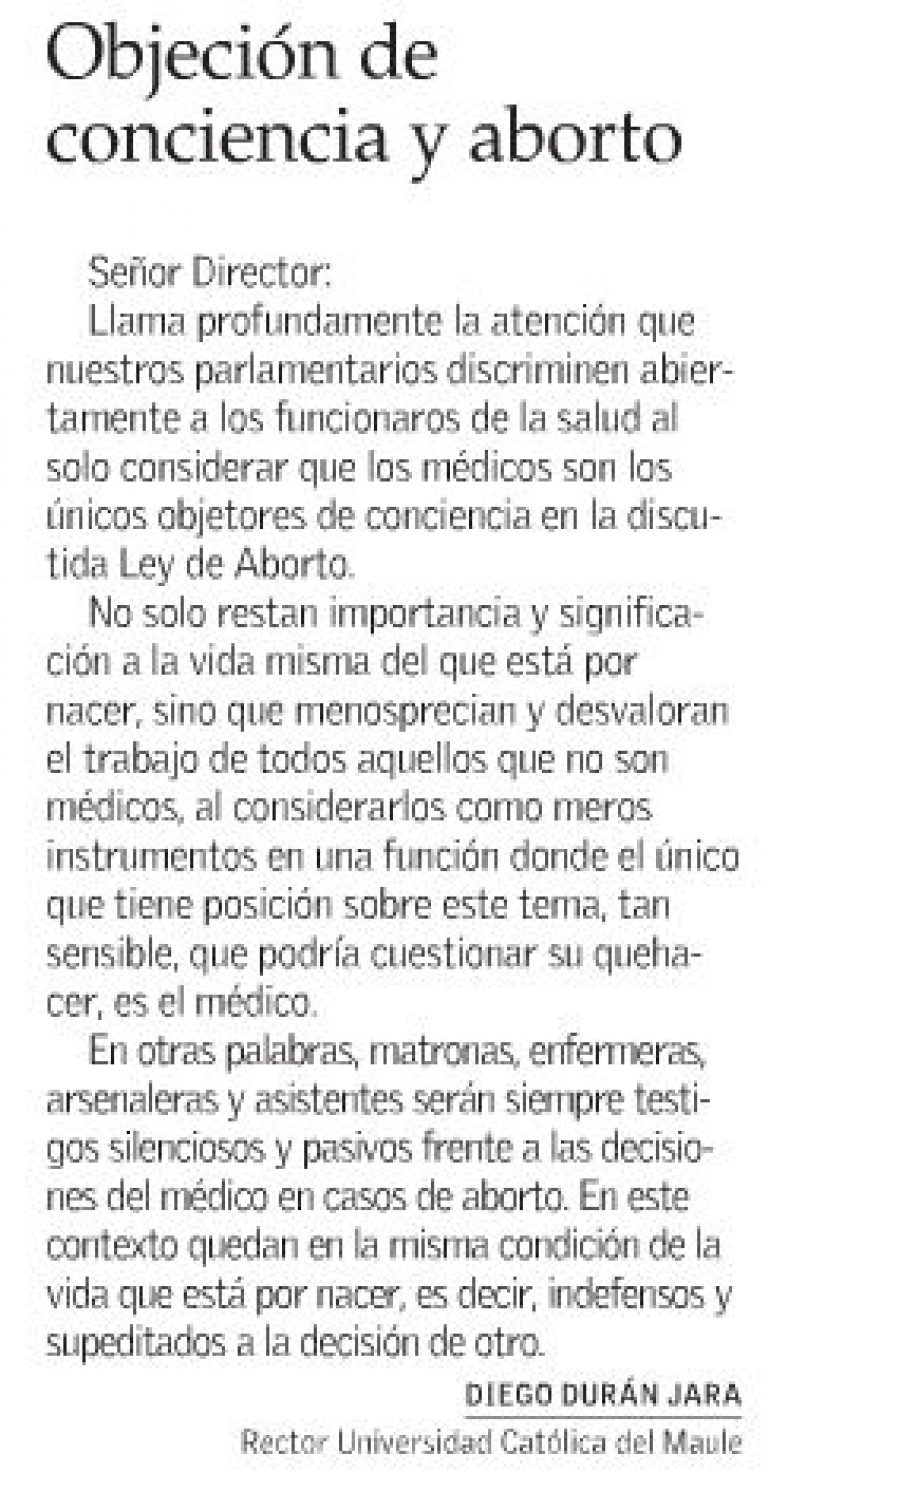 15 de junio en Diario El Mercurio: “Objeción de conciencia y aborto”